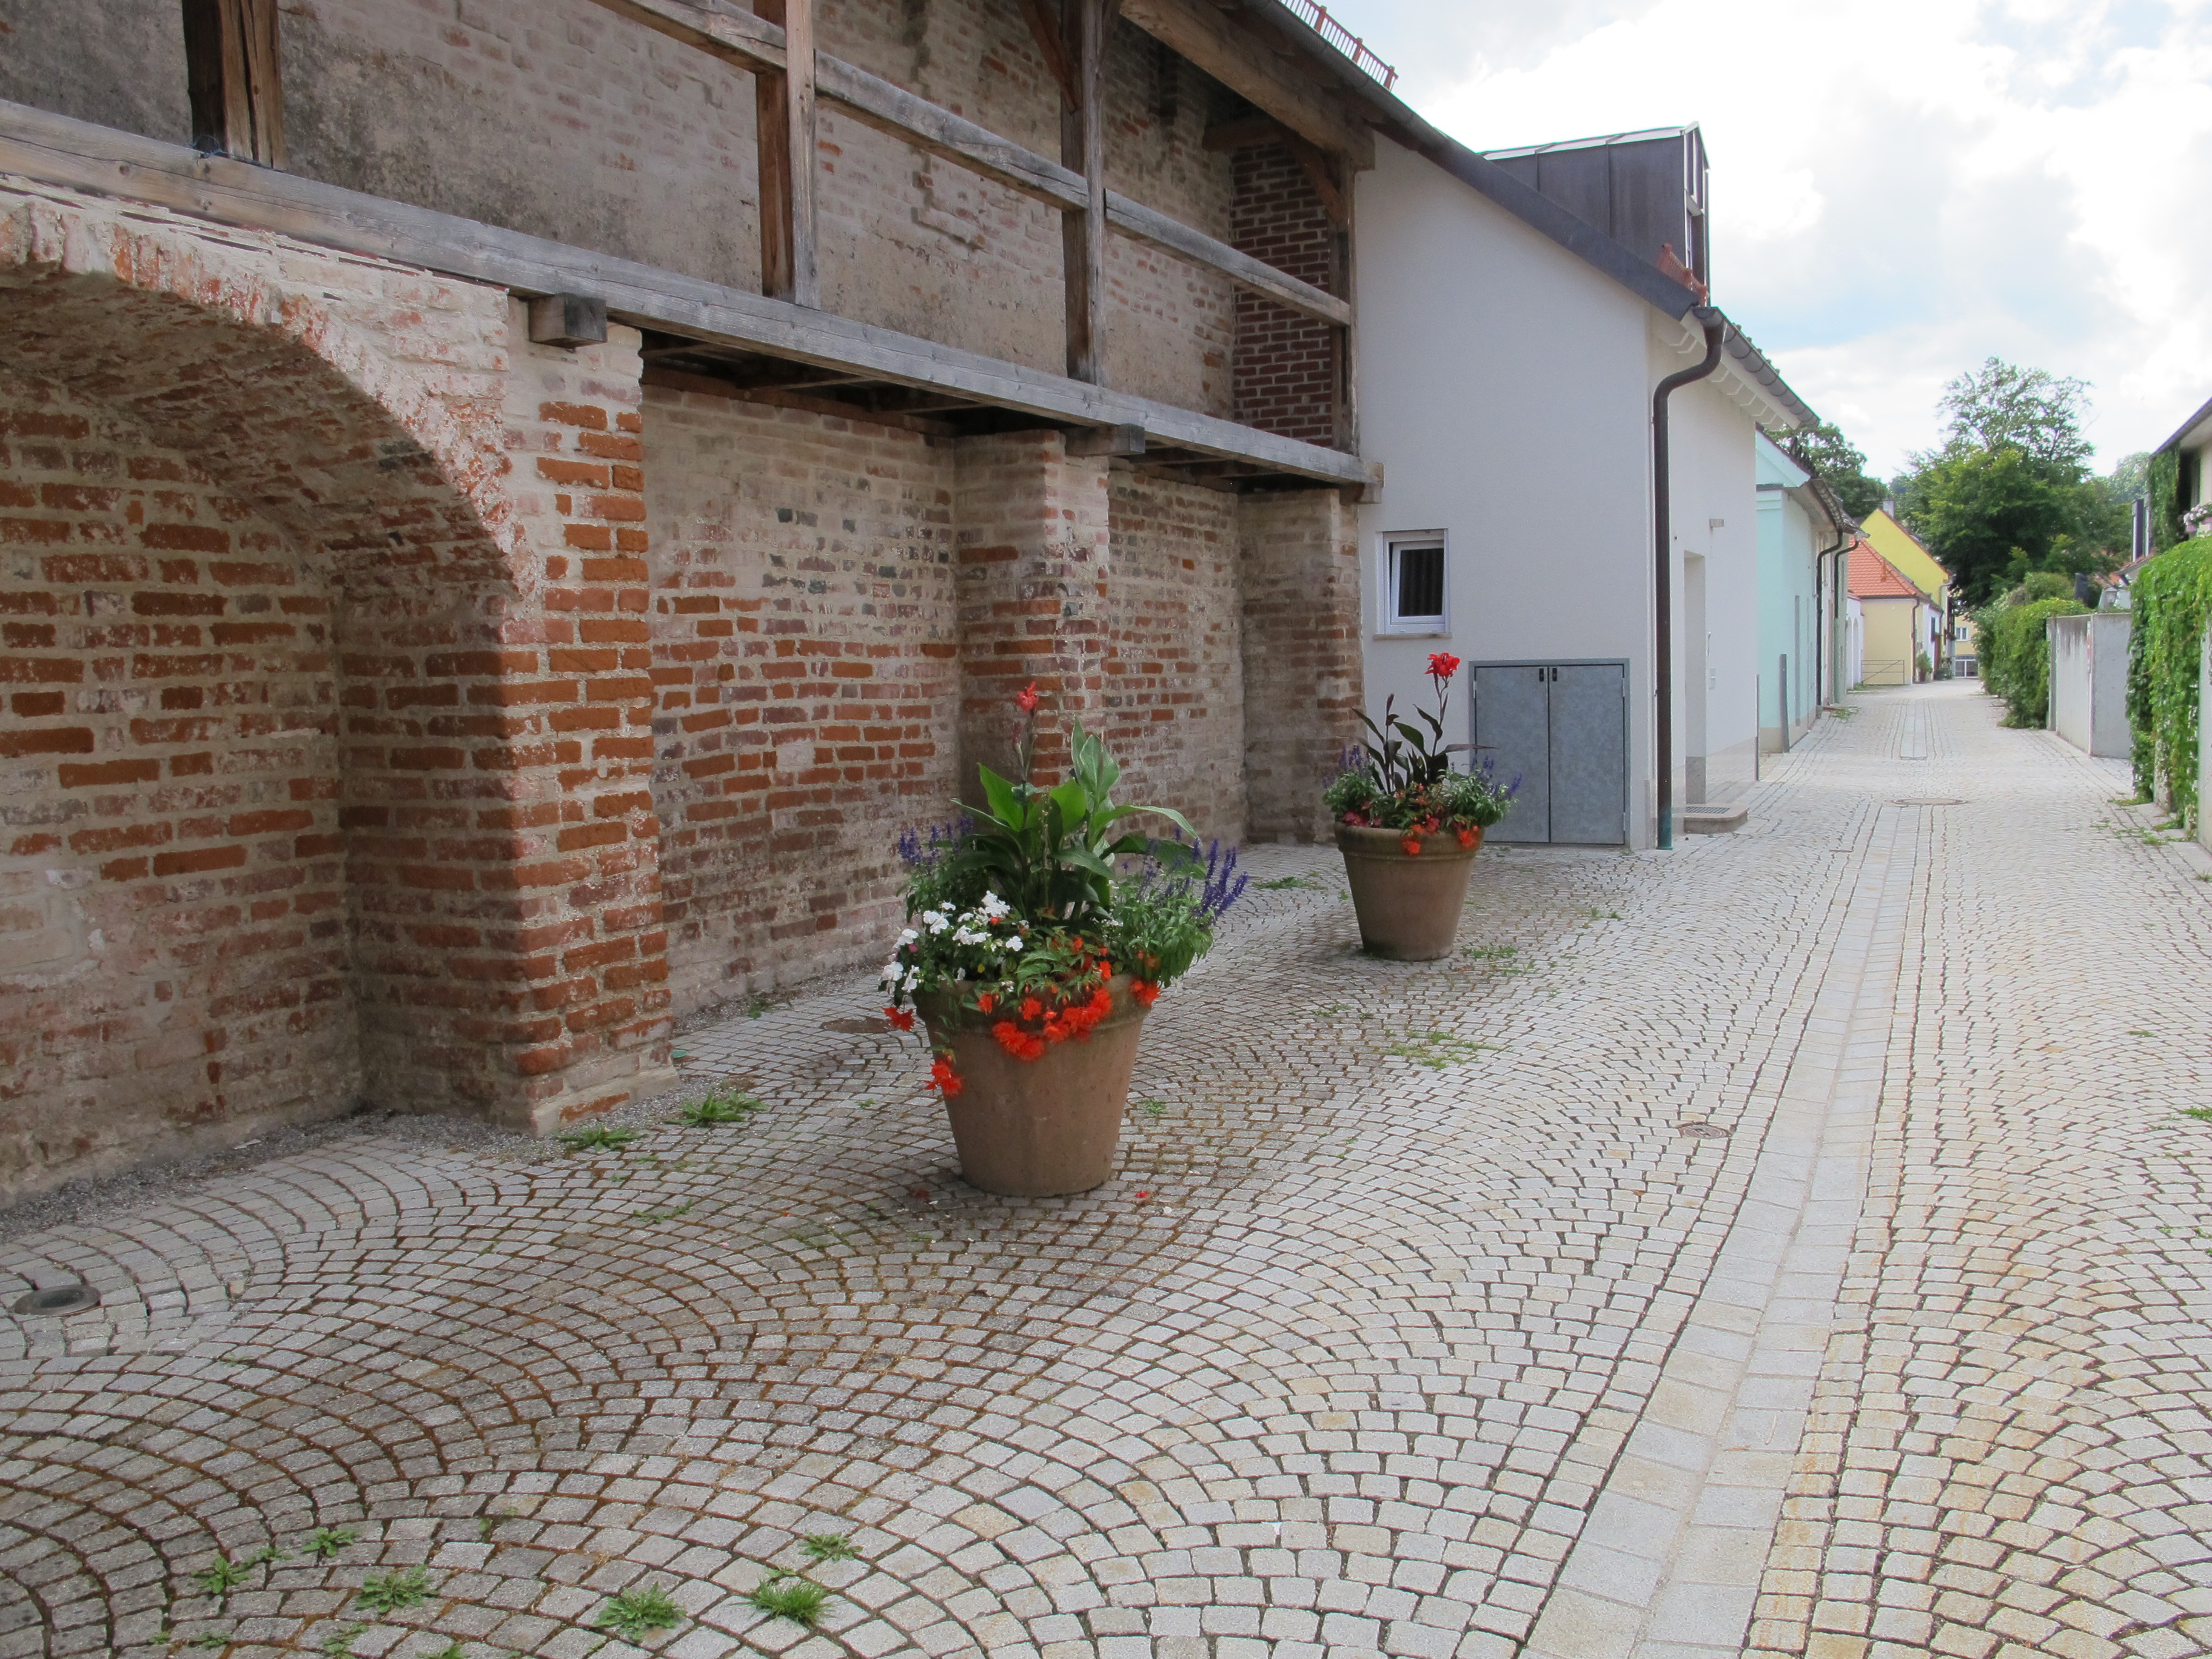 Mindelheim, Stadtmauer an der Imhofgasse